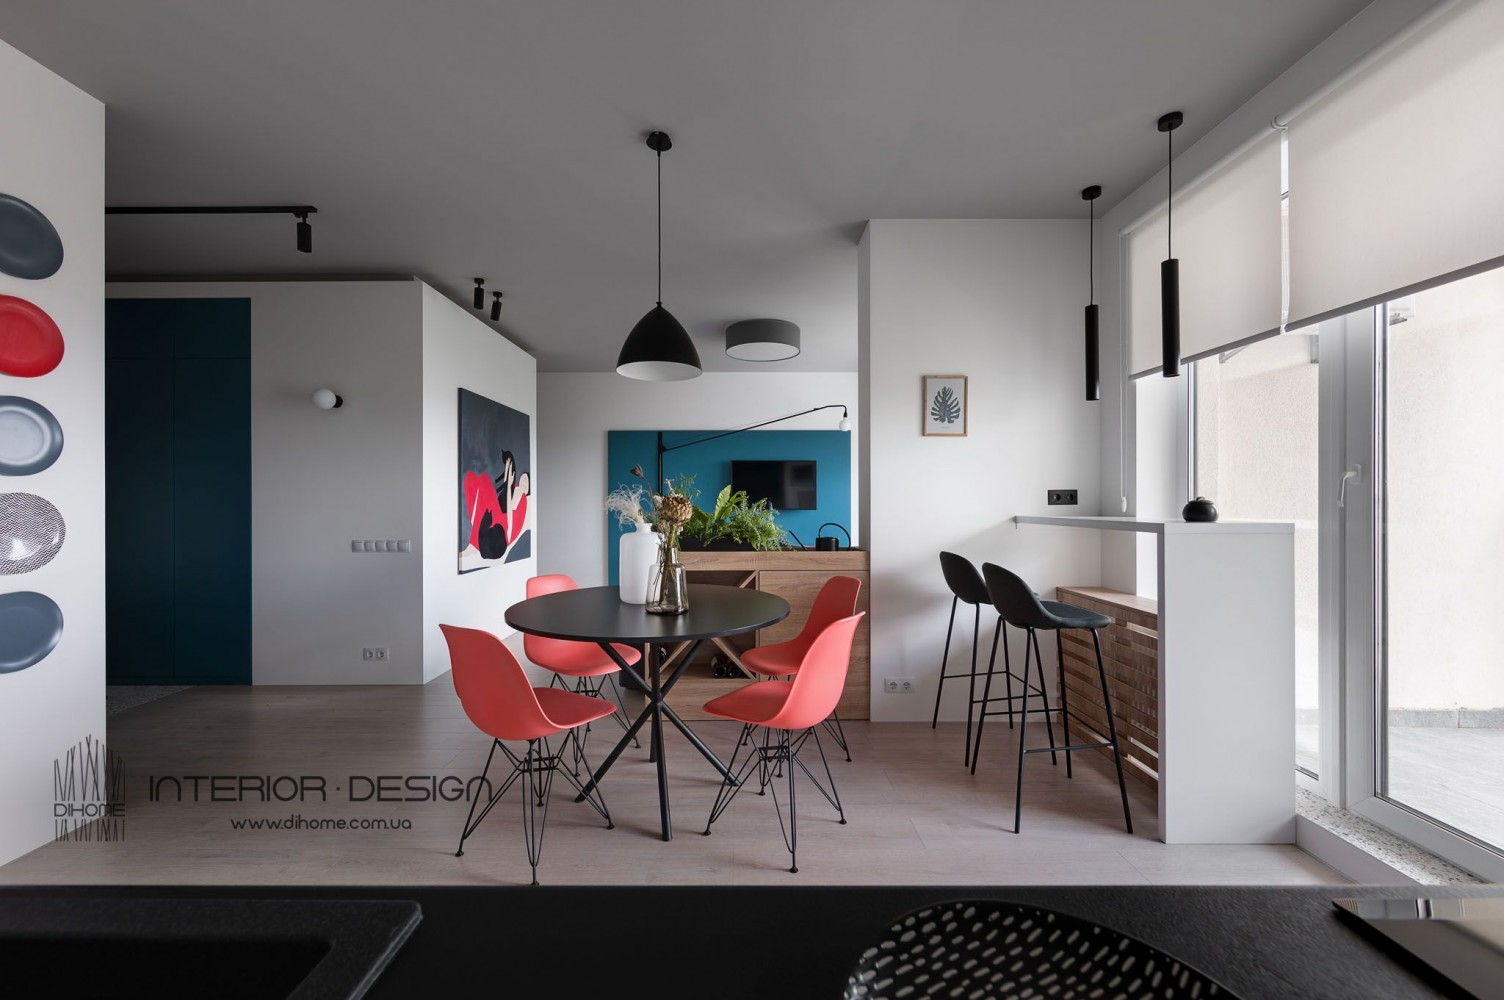 Фото дизайна: Гостина студия – BRIGHT MOOD – интерьер однокомнатной квартиры 47 м2 – 2139